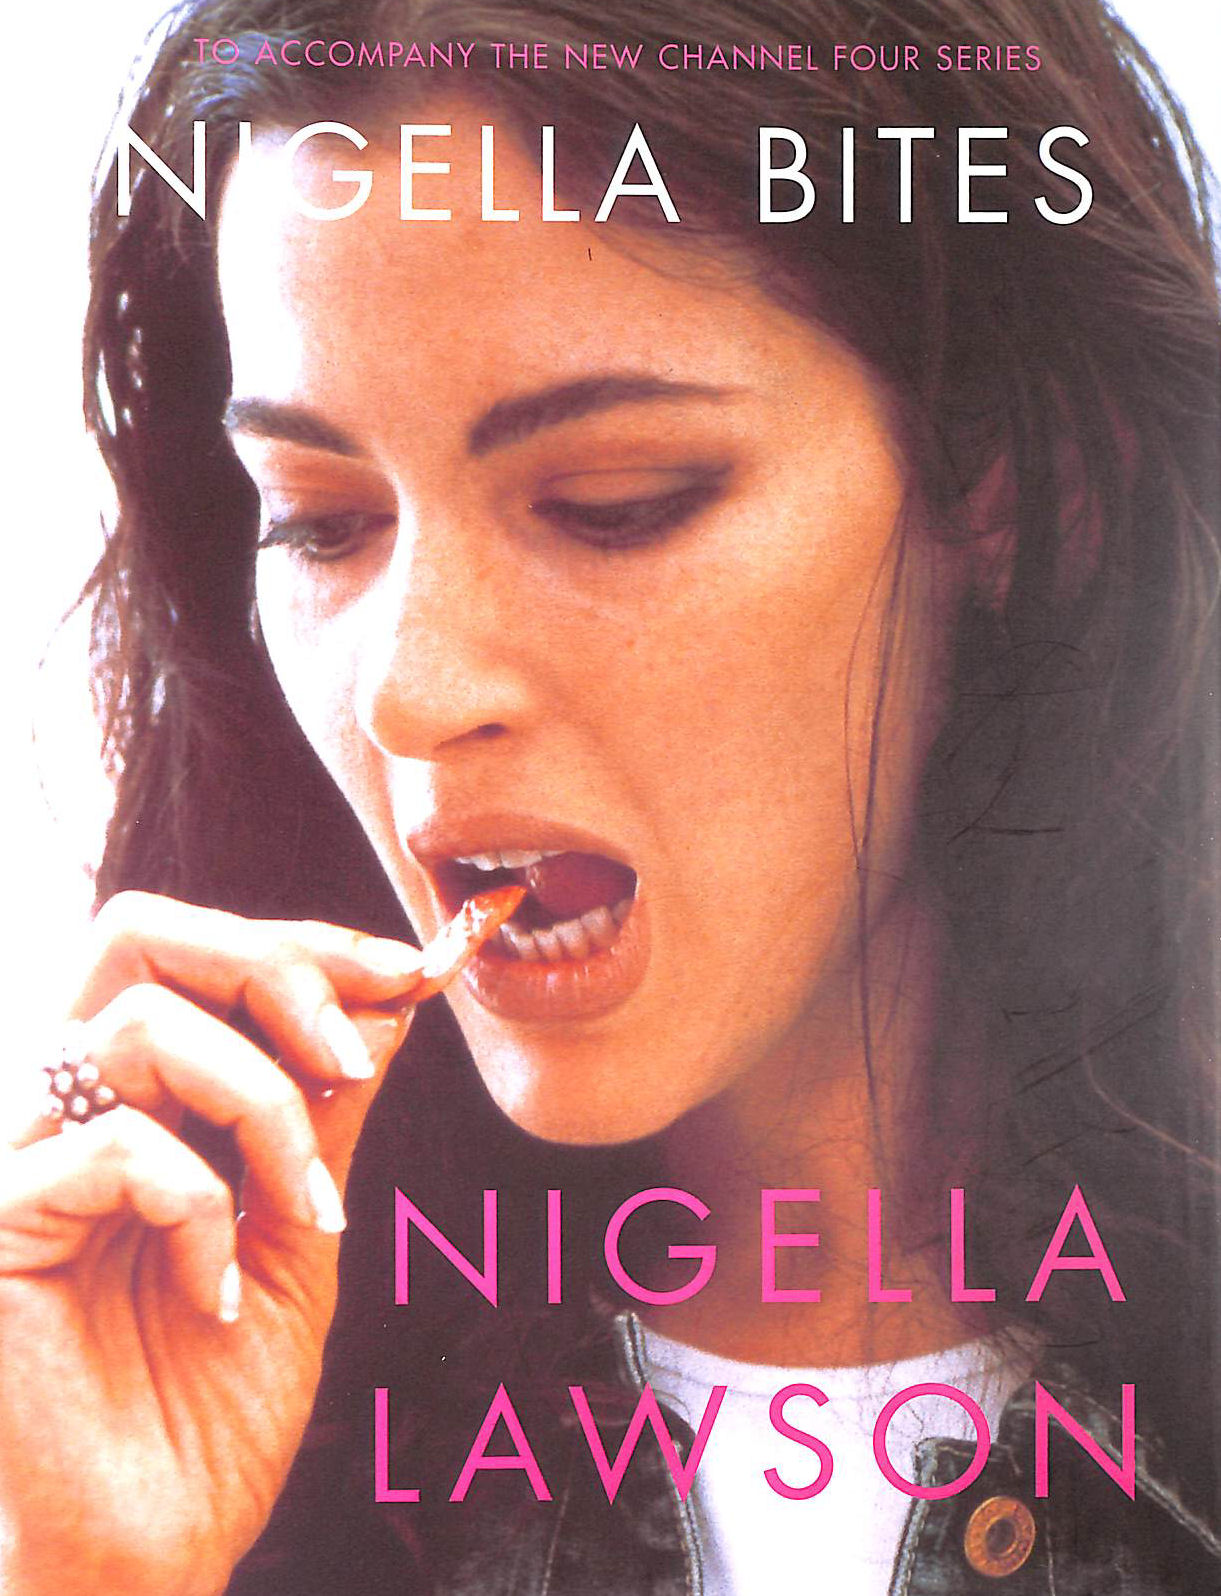 LAWSON, NIGELLA - Nigella Bites